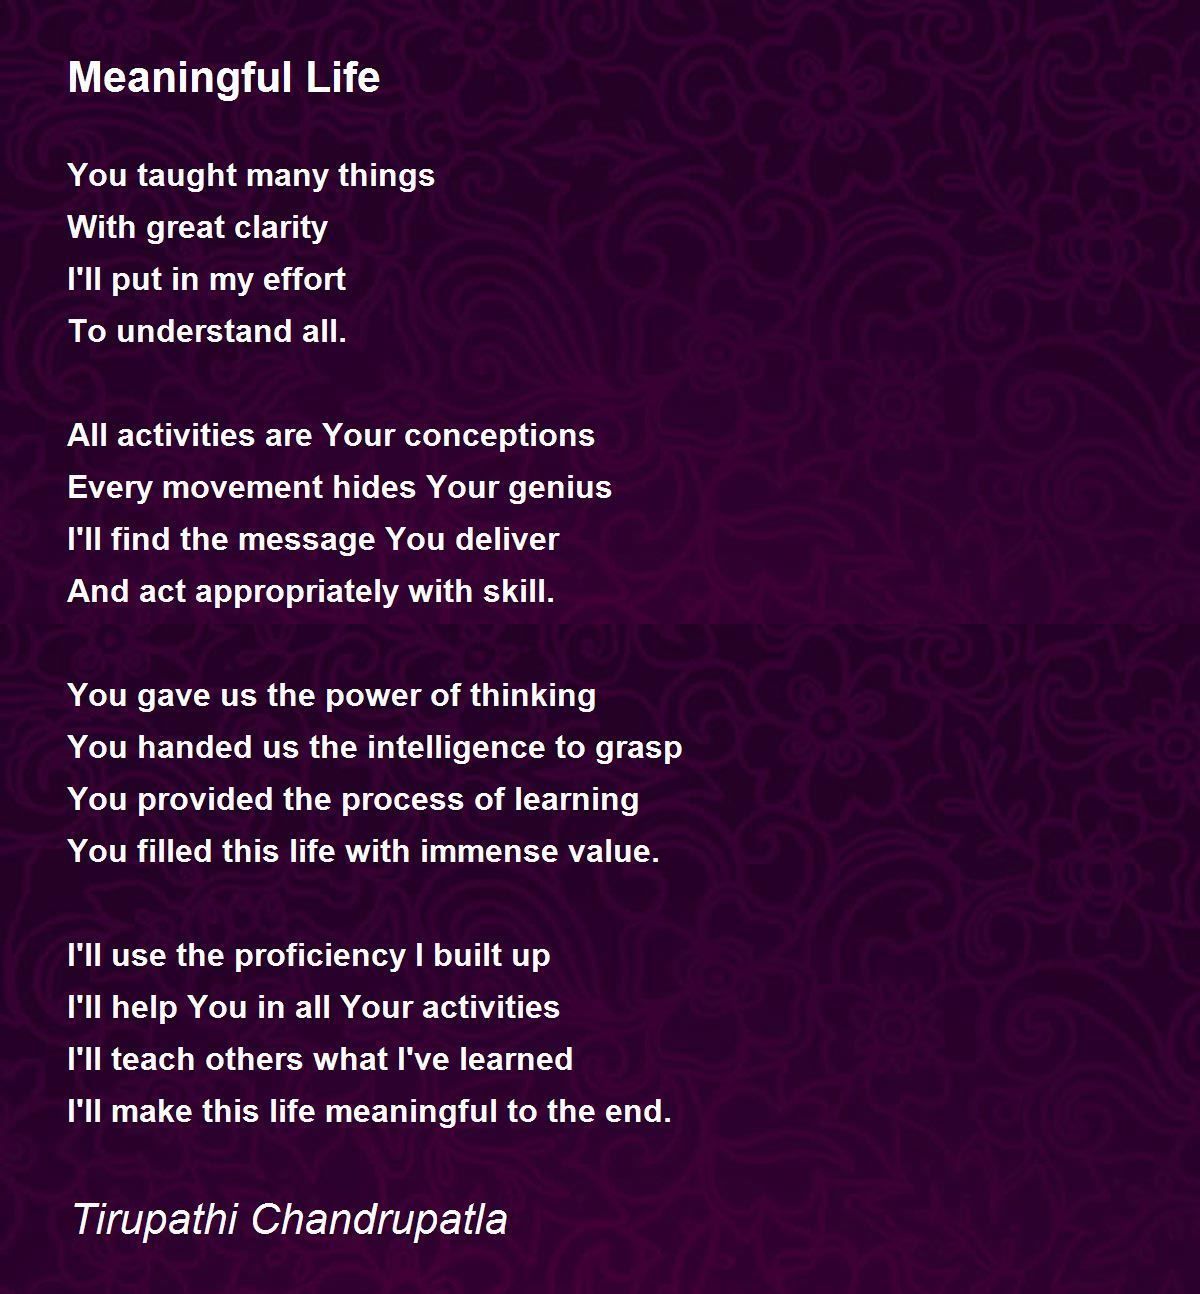 Meaningful Life - Meaningful Life Poem by Tirupathi Chandrupatla